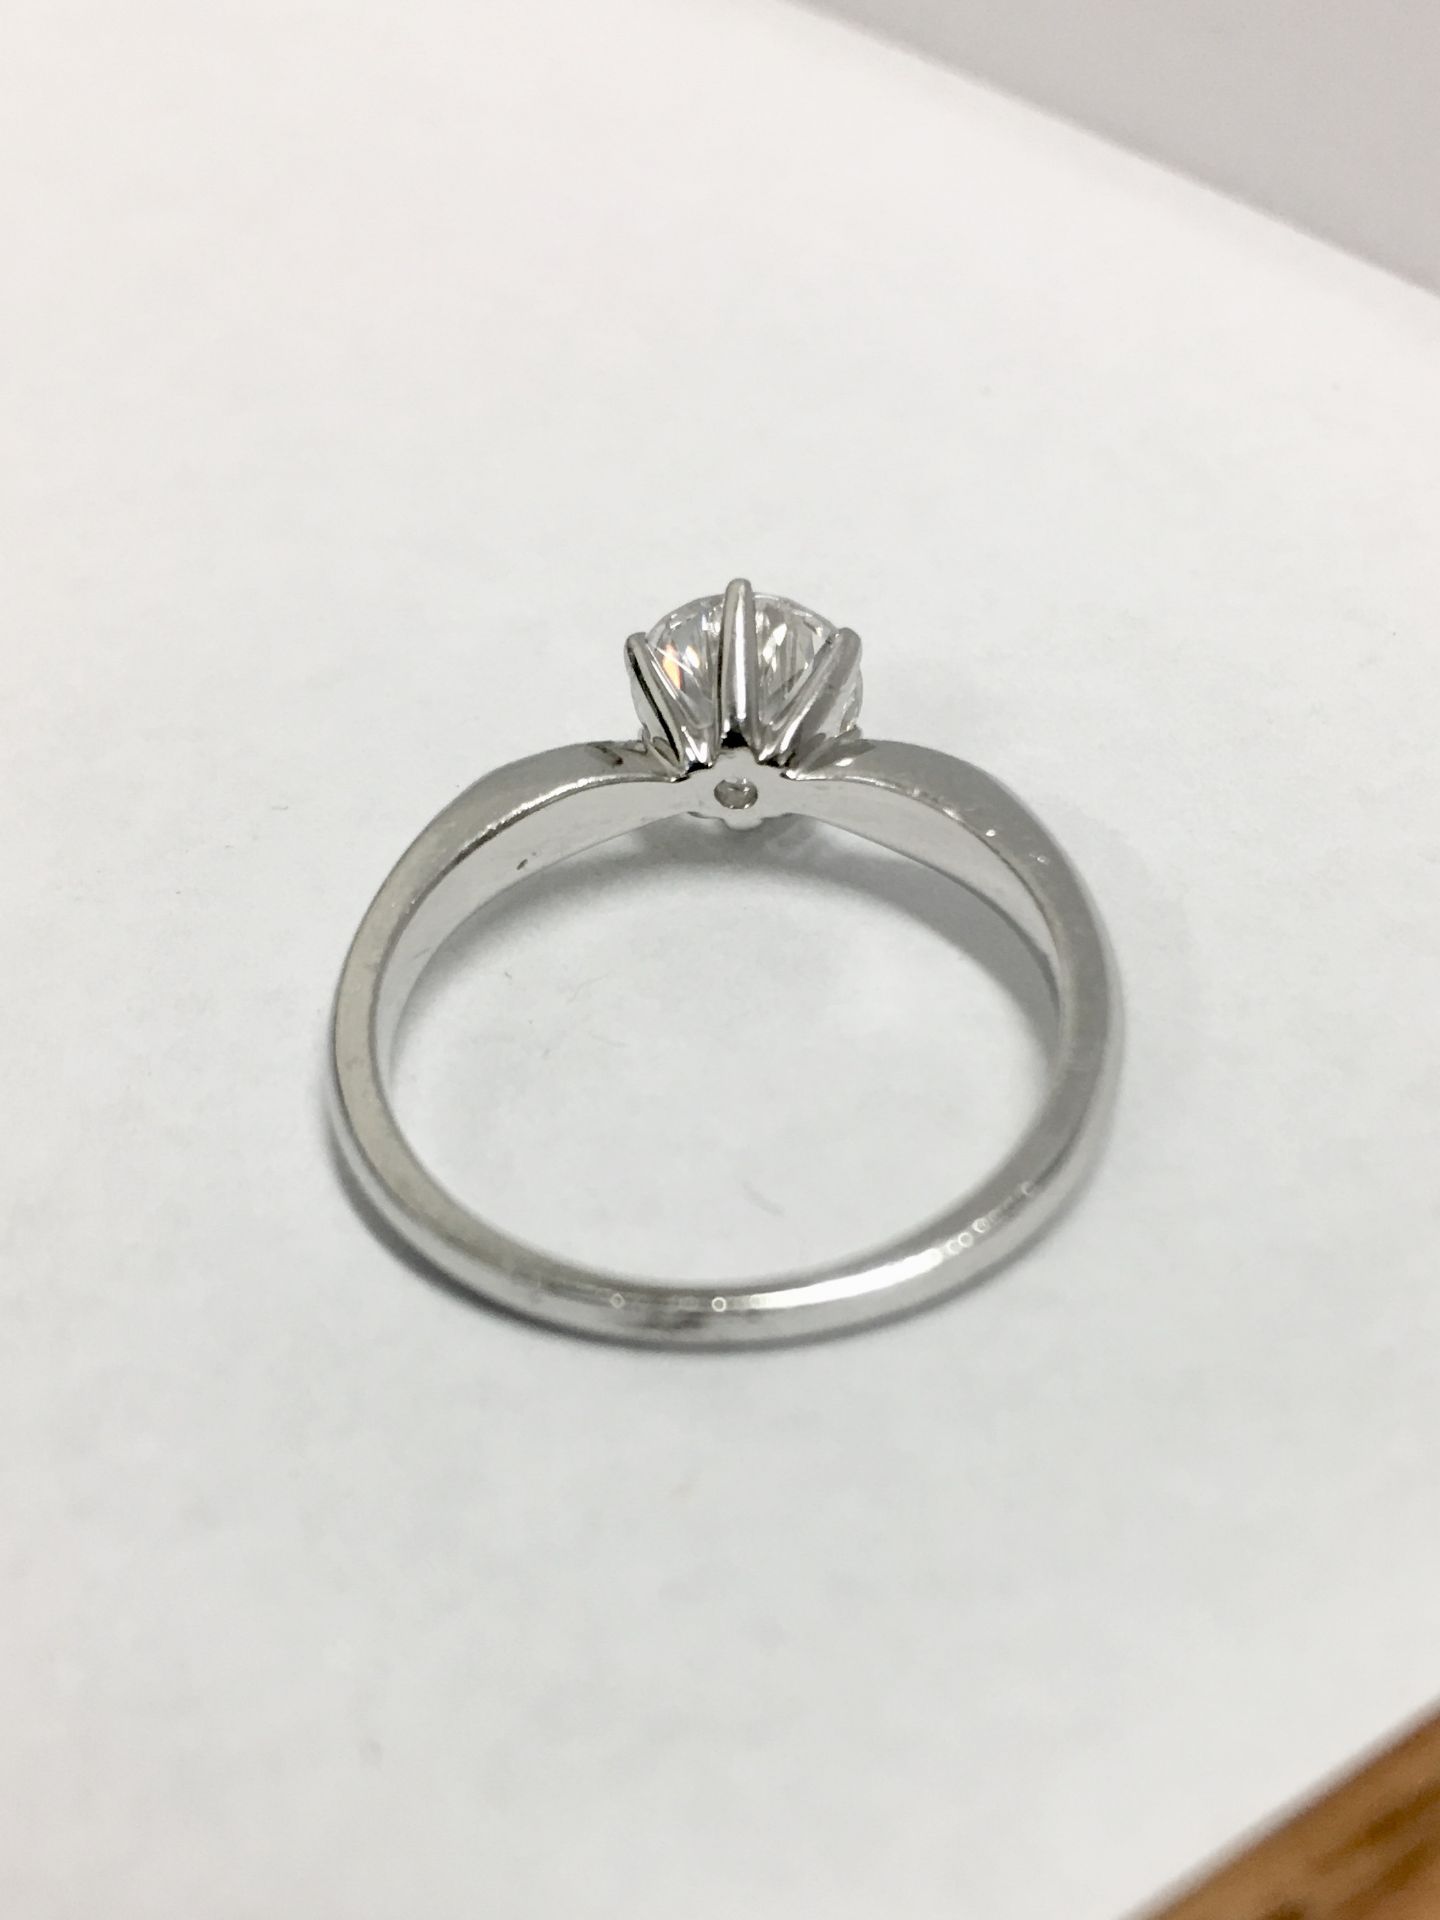 Platinum diamond solitaire ring,0.50ct brilliant cut diamond h colour vs clarity(clarity enhanced), - Image 3 of 4